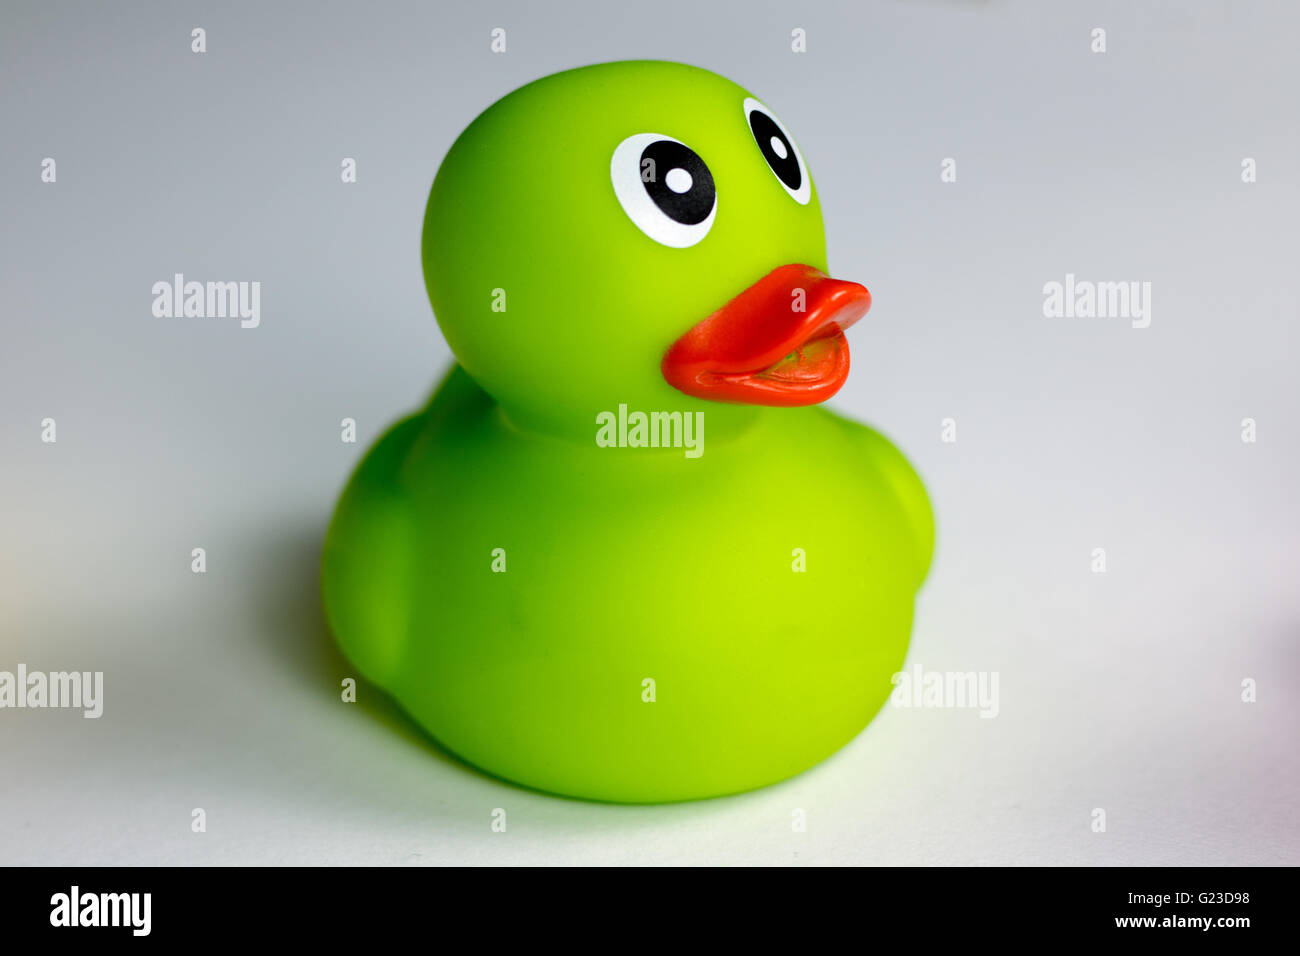 Bright green rubber duck Stock Photo